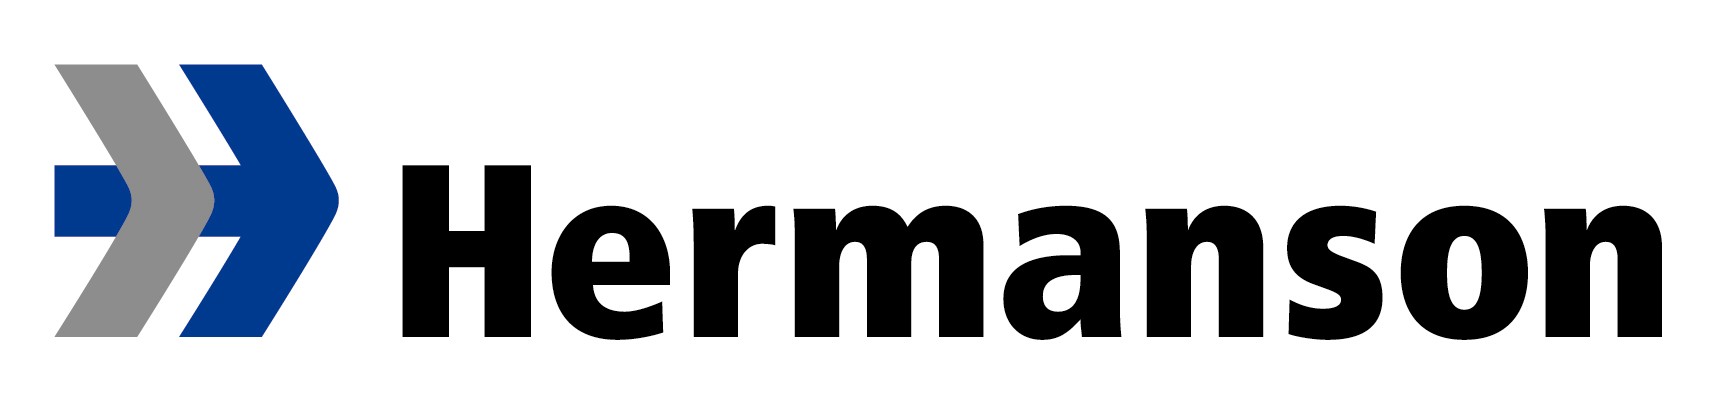 Hermanson Company